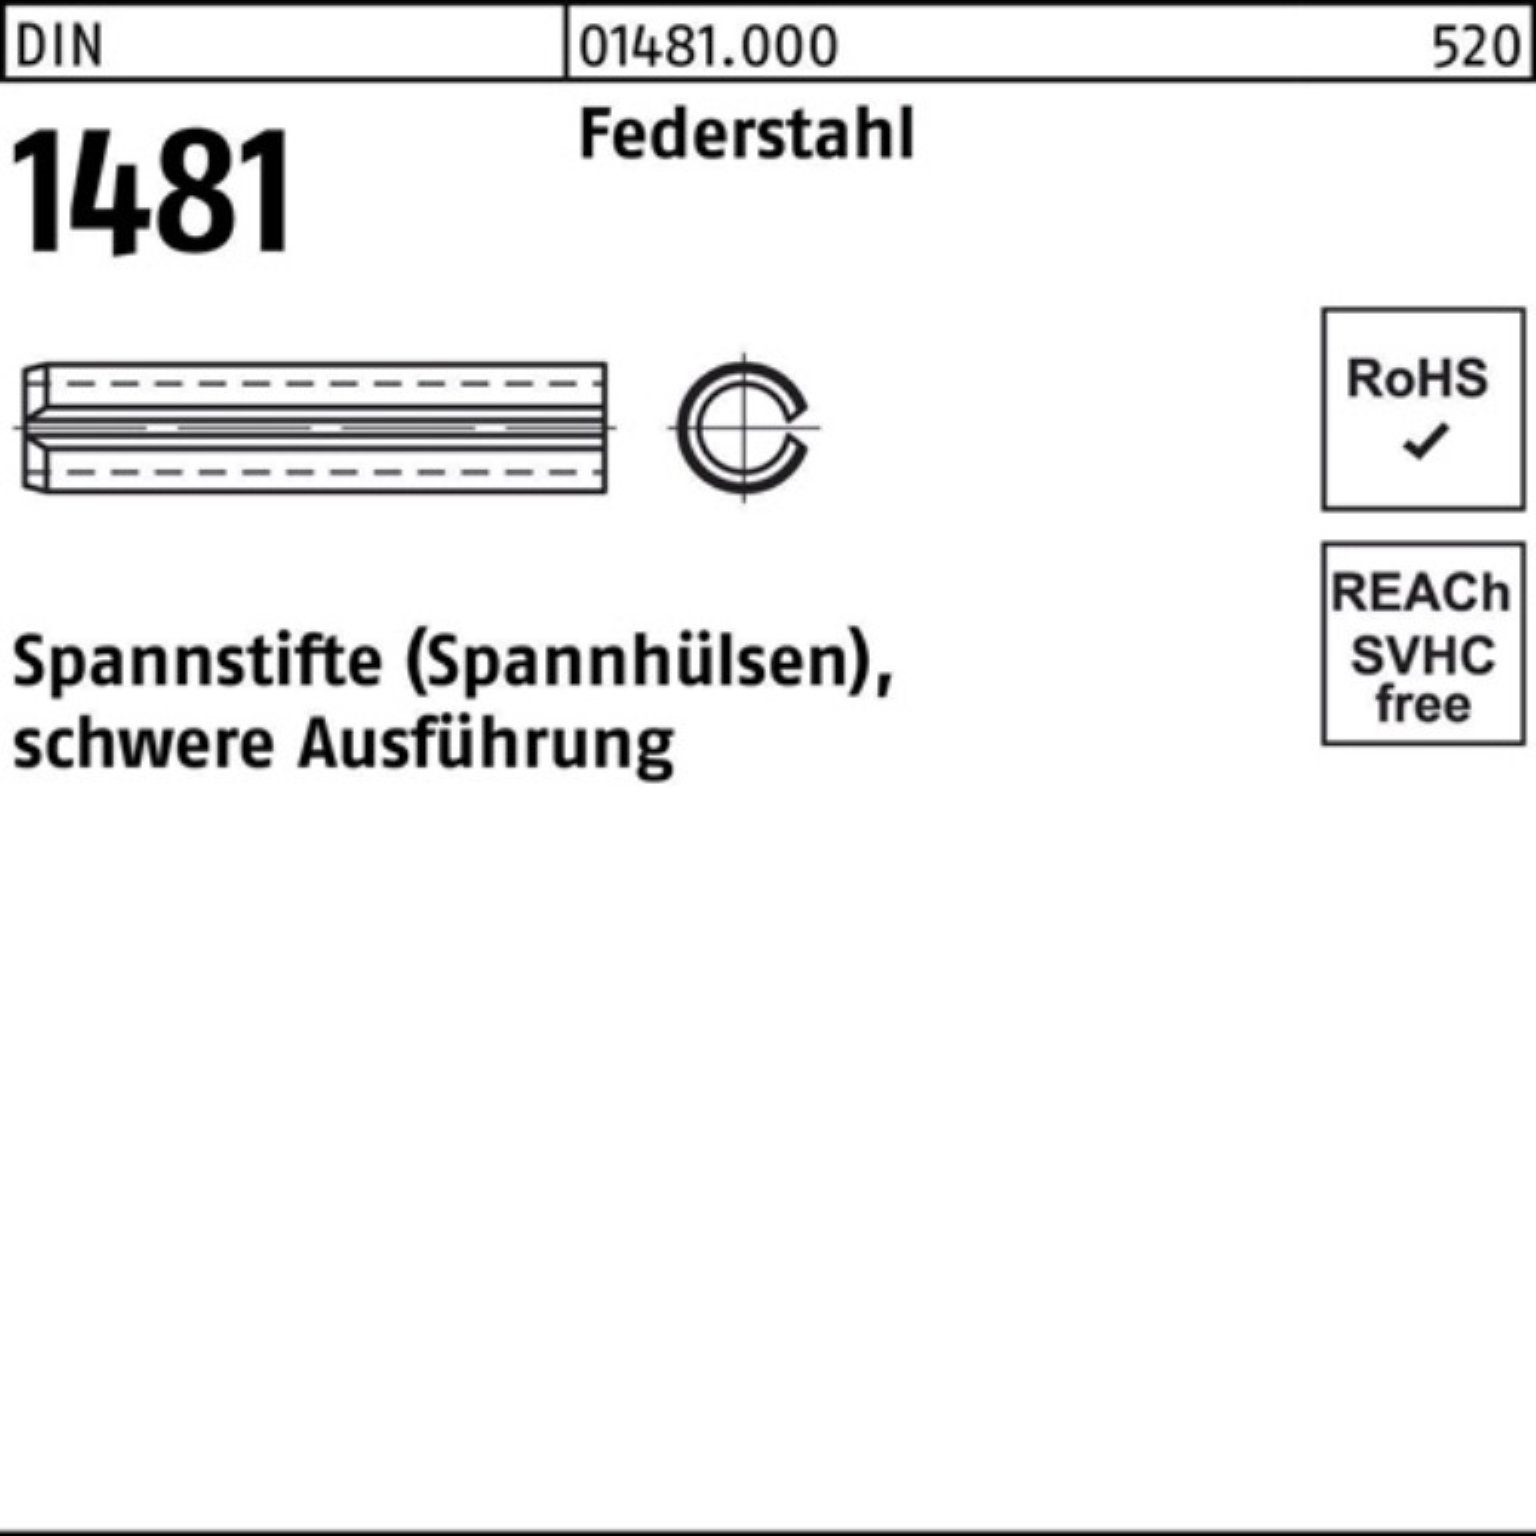 Reyher Spannstift 1000er Pack Spannstift DIN Federstahl Ausführung schwere 1481 26 2x 1